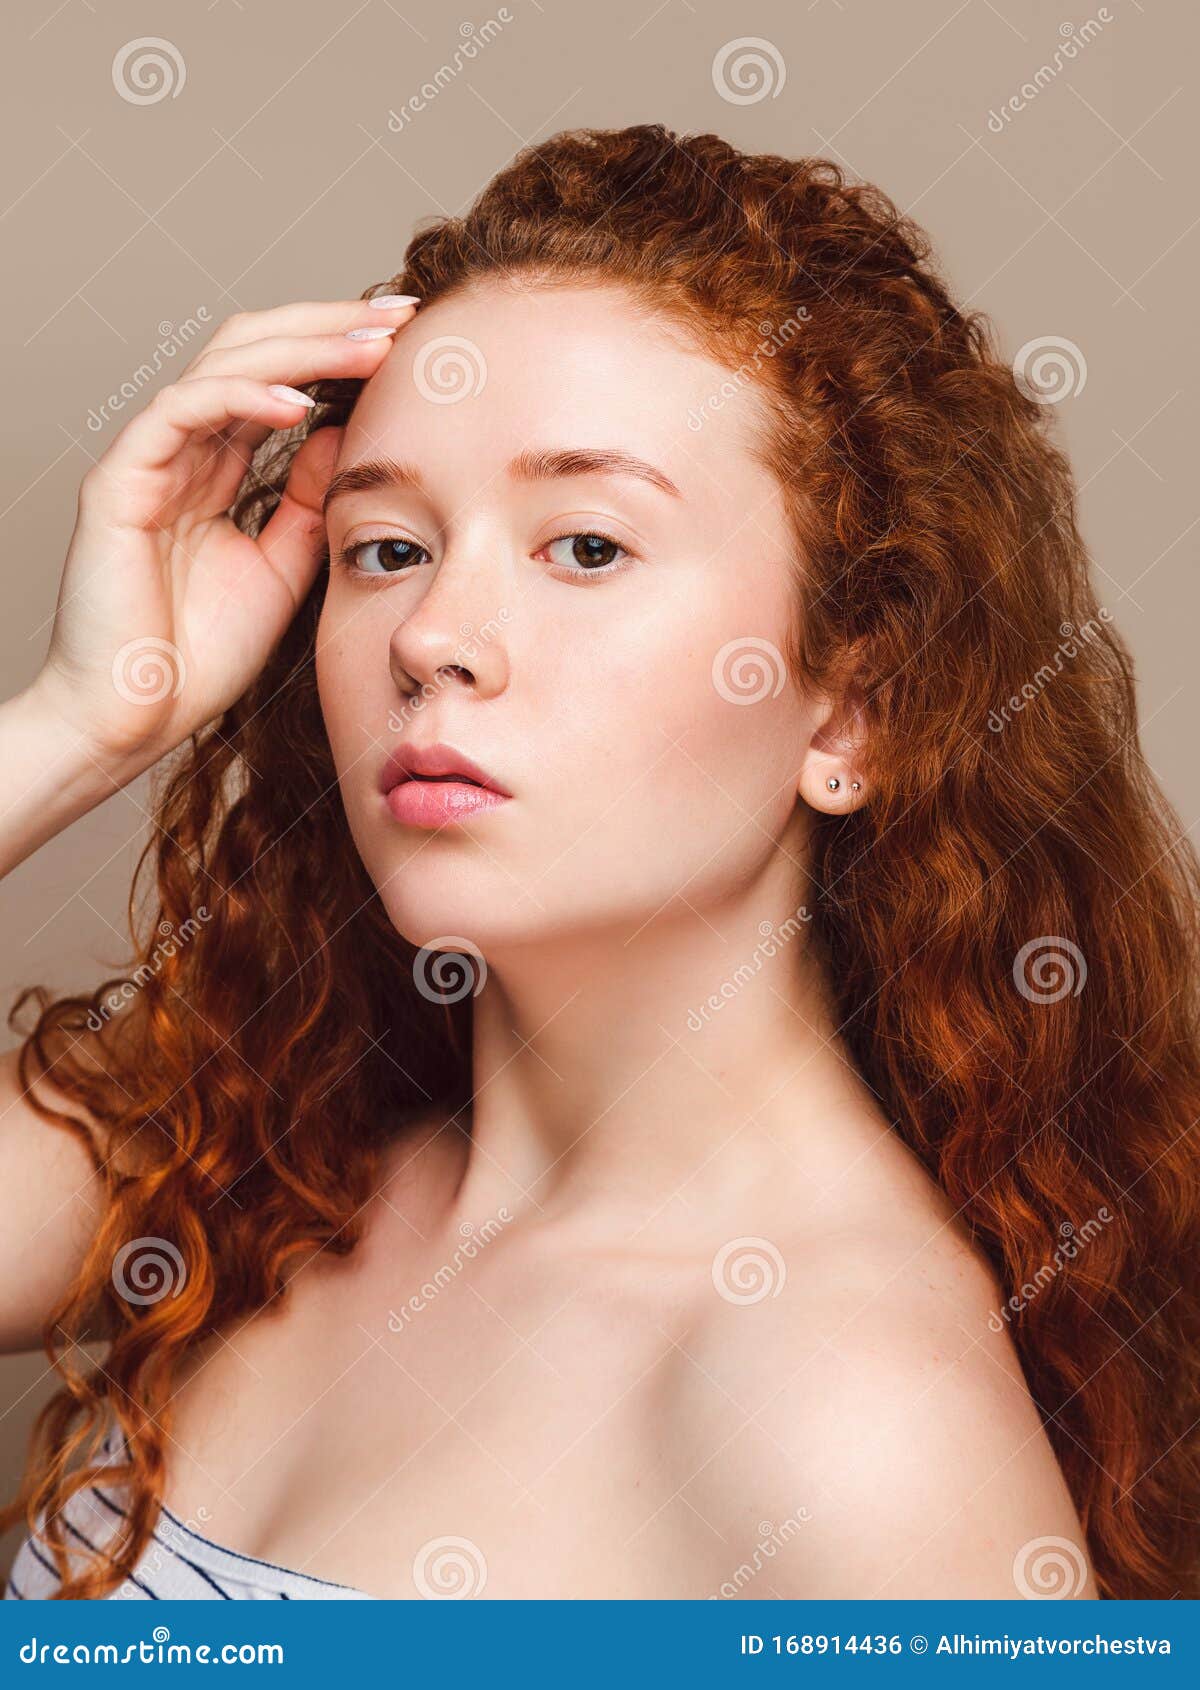 Red head girl beauty HD wallpapers | Pxfuel